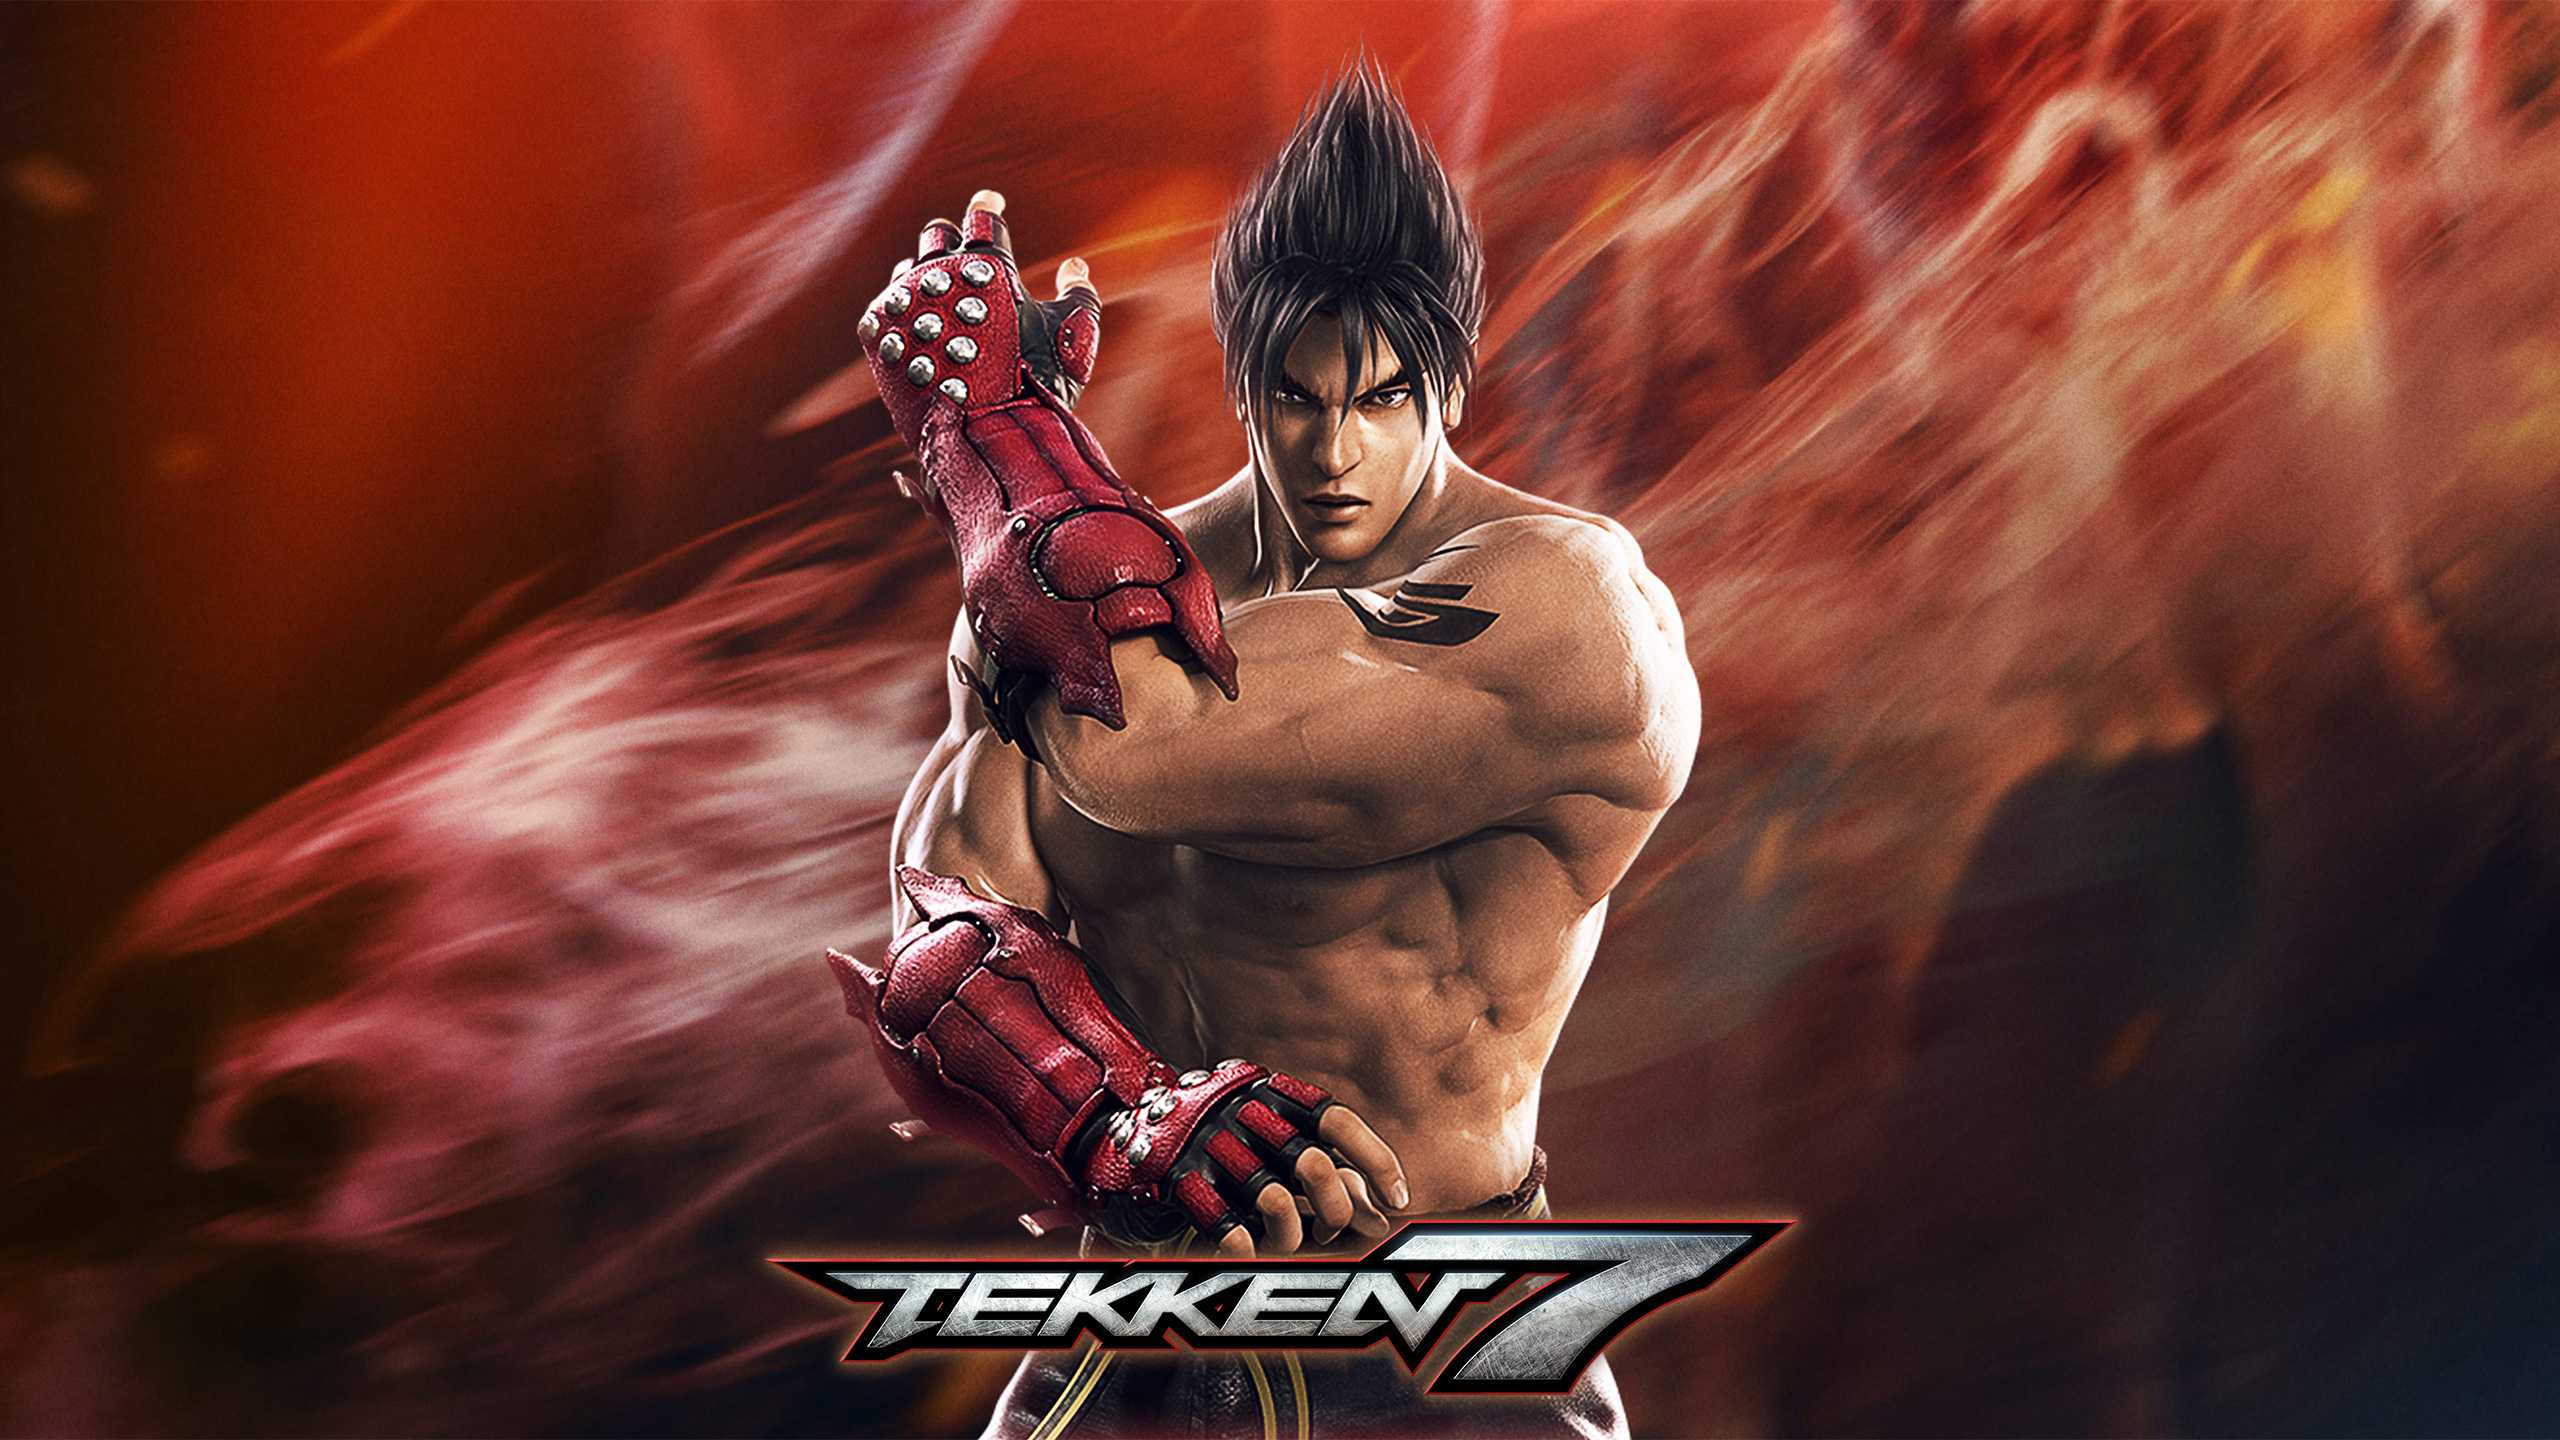 Tekken Jin Kazama Custom Wallpaper 7 HD Of Mobile Phones Pics